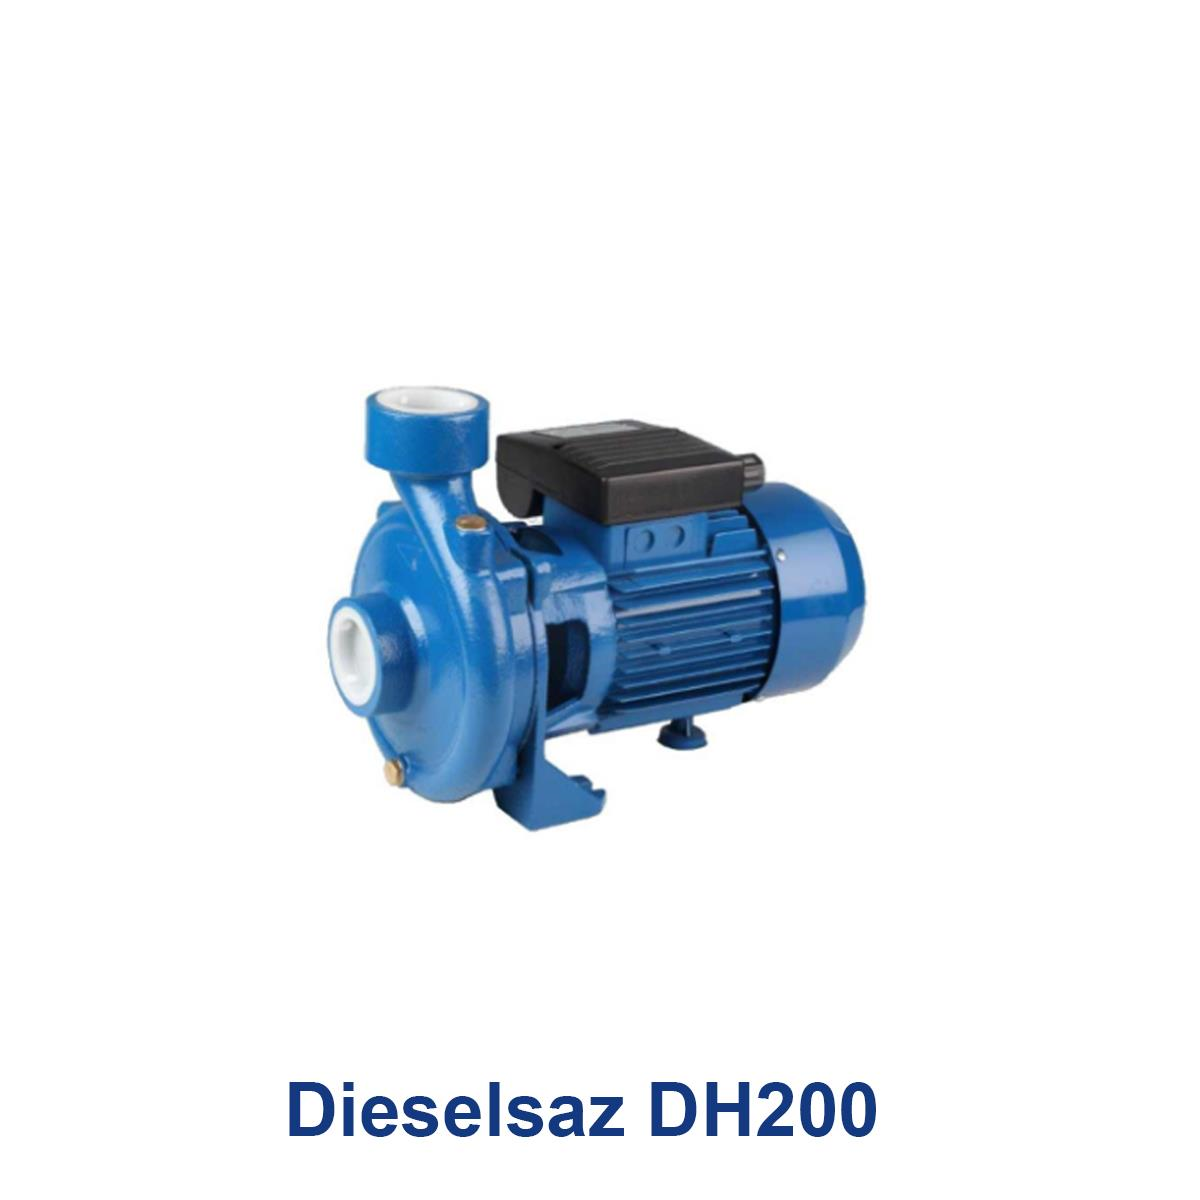 Dieselsaz-DH200